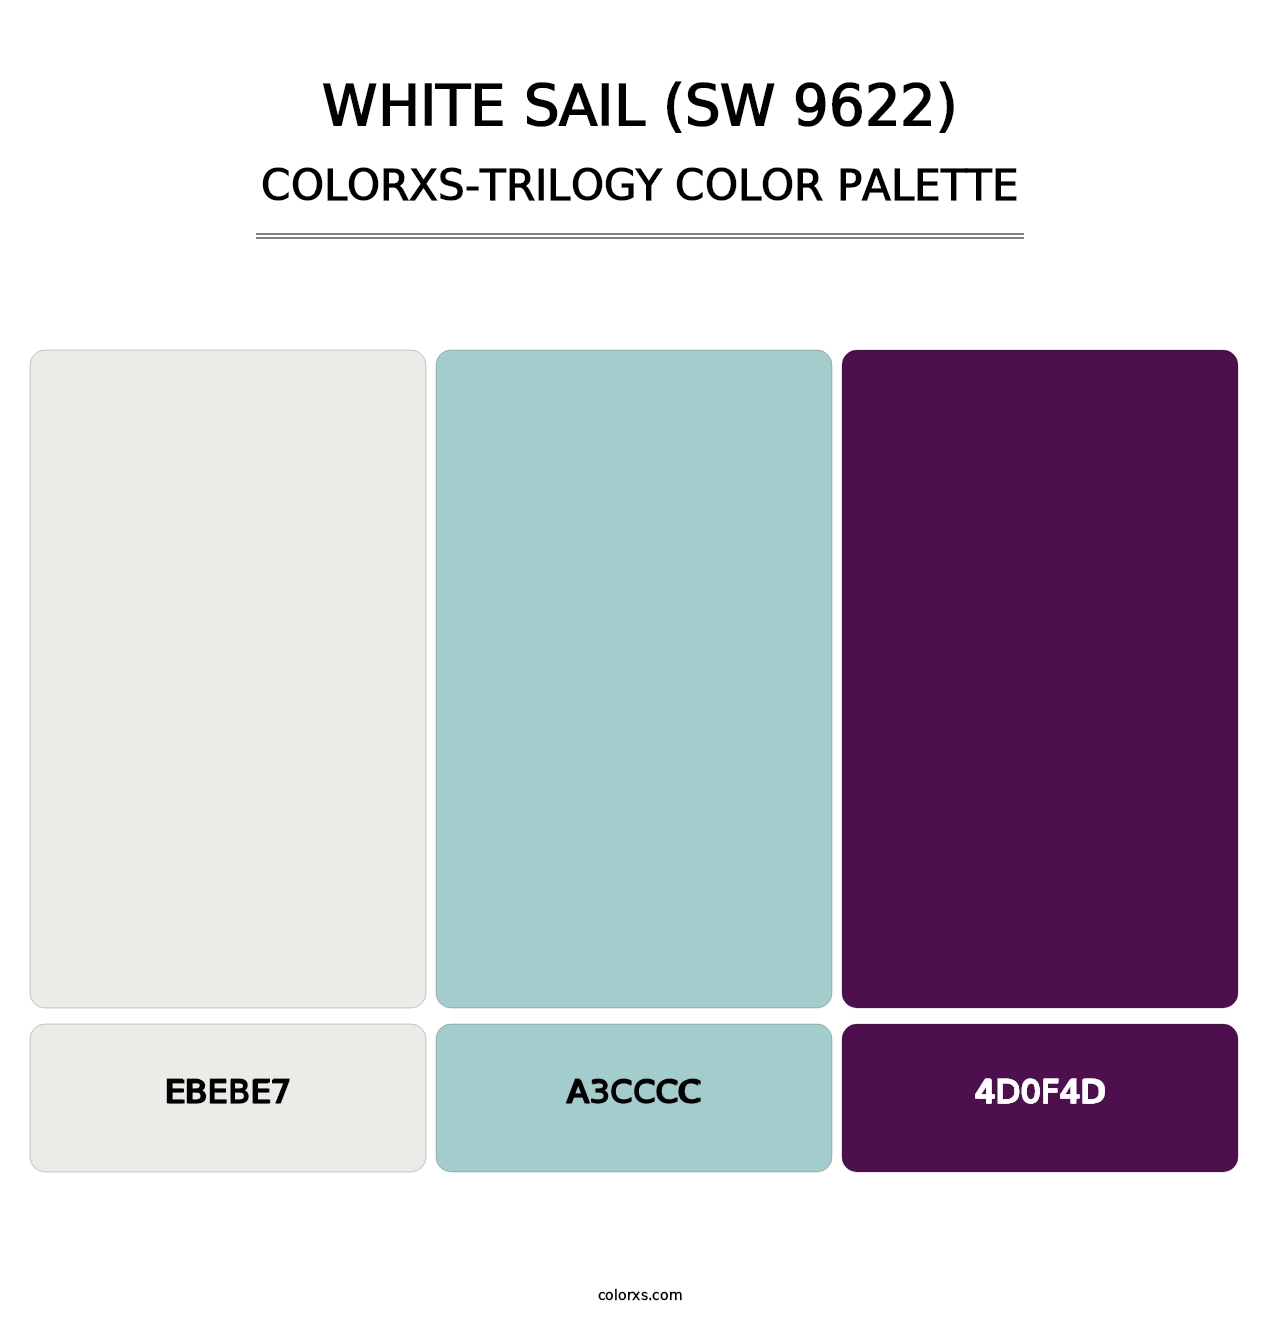 White Sail (SW 9622) - Colorxs Trilogy Palette